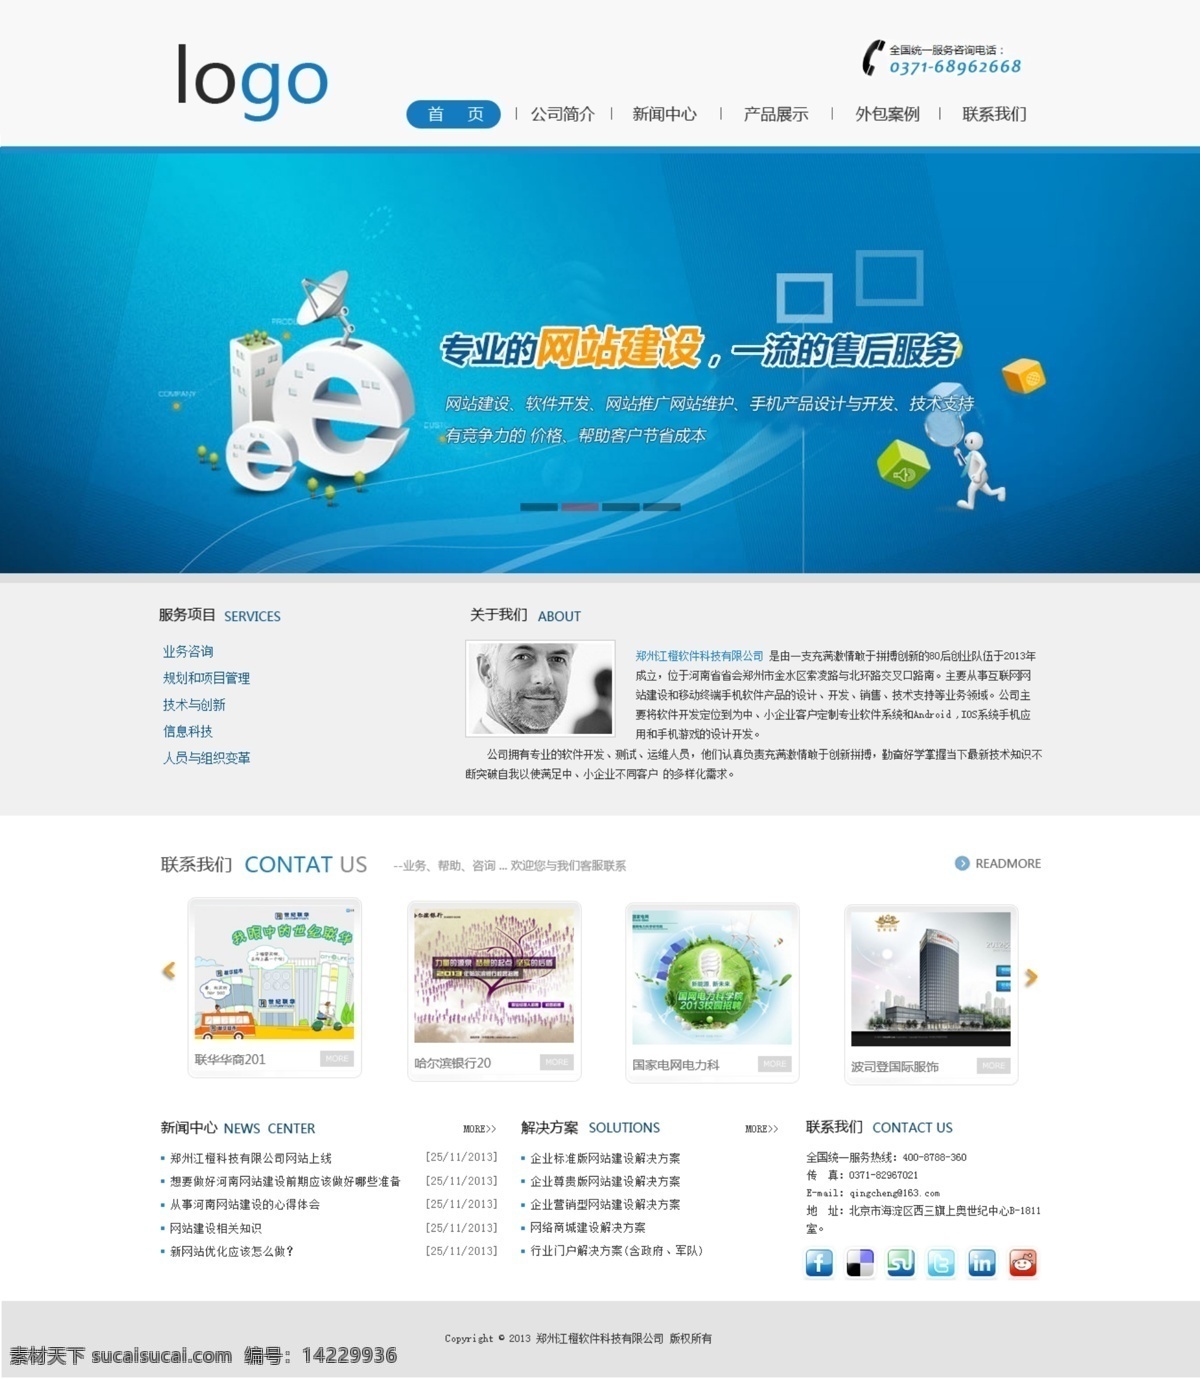 企业站首页 企业站 首页 首页效果图 科技网站 网站建设 web 界面设计 中文模板